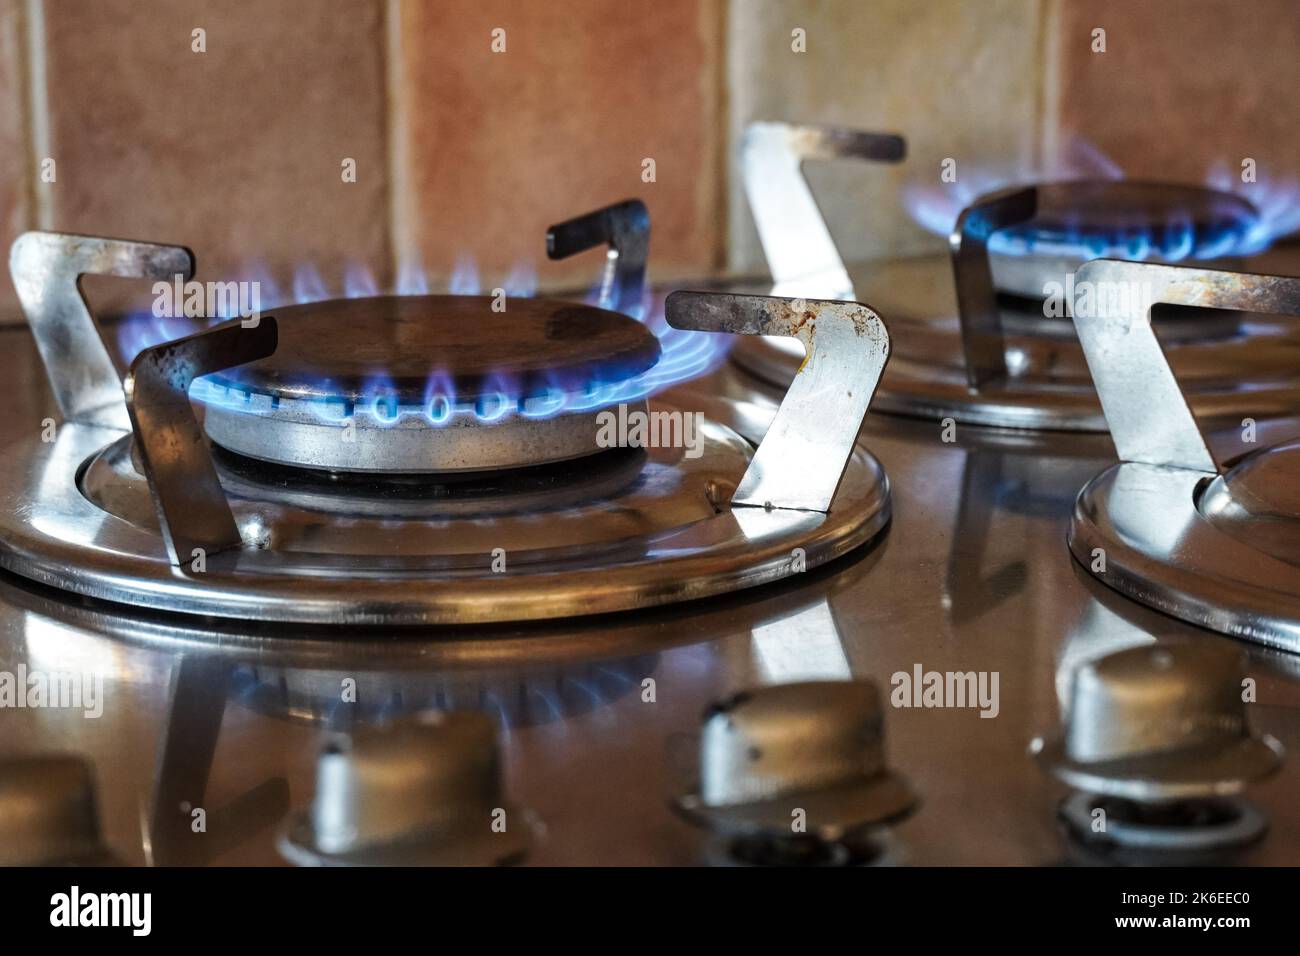 Flammes de gaz bleues qui brûlent sur un brûleur de table de cuisson à gaz, cuisinière à gaz de cuisine Banque D'Images